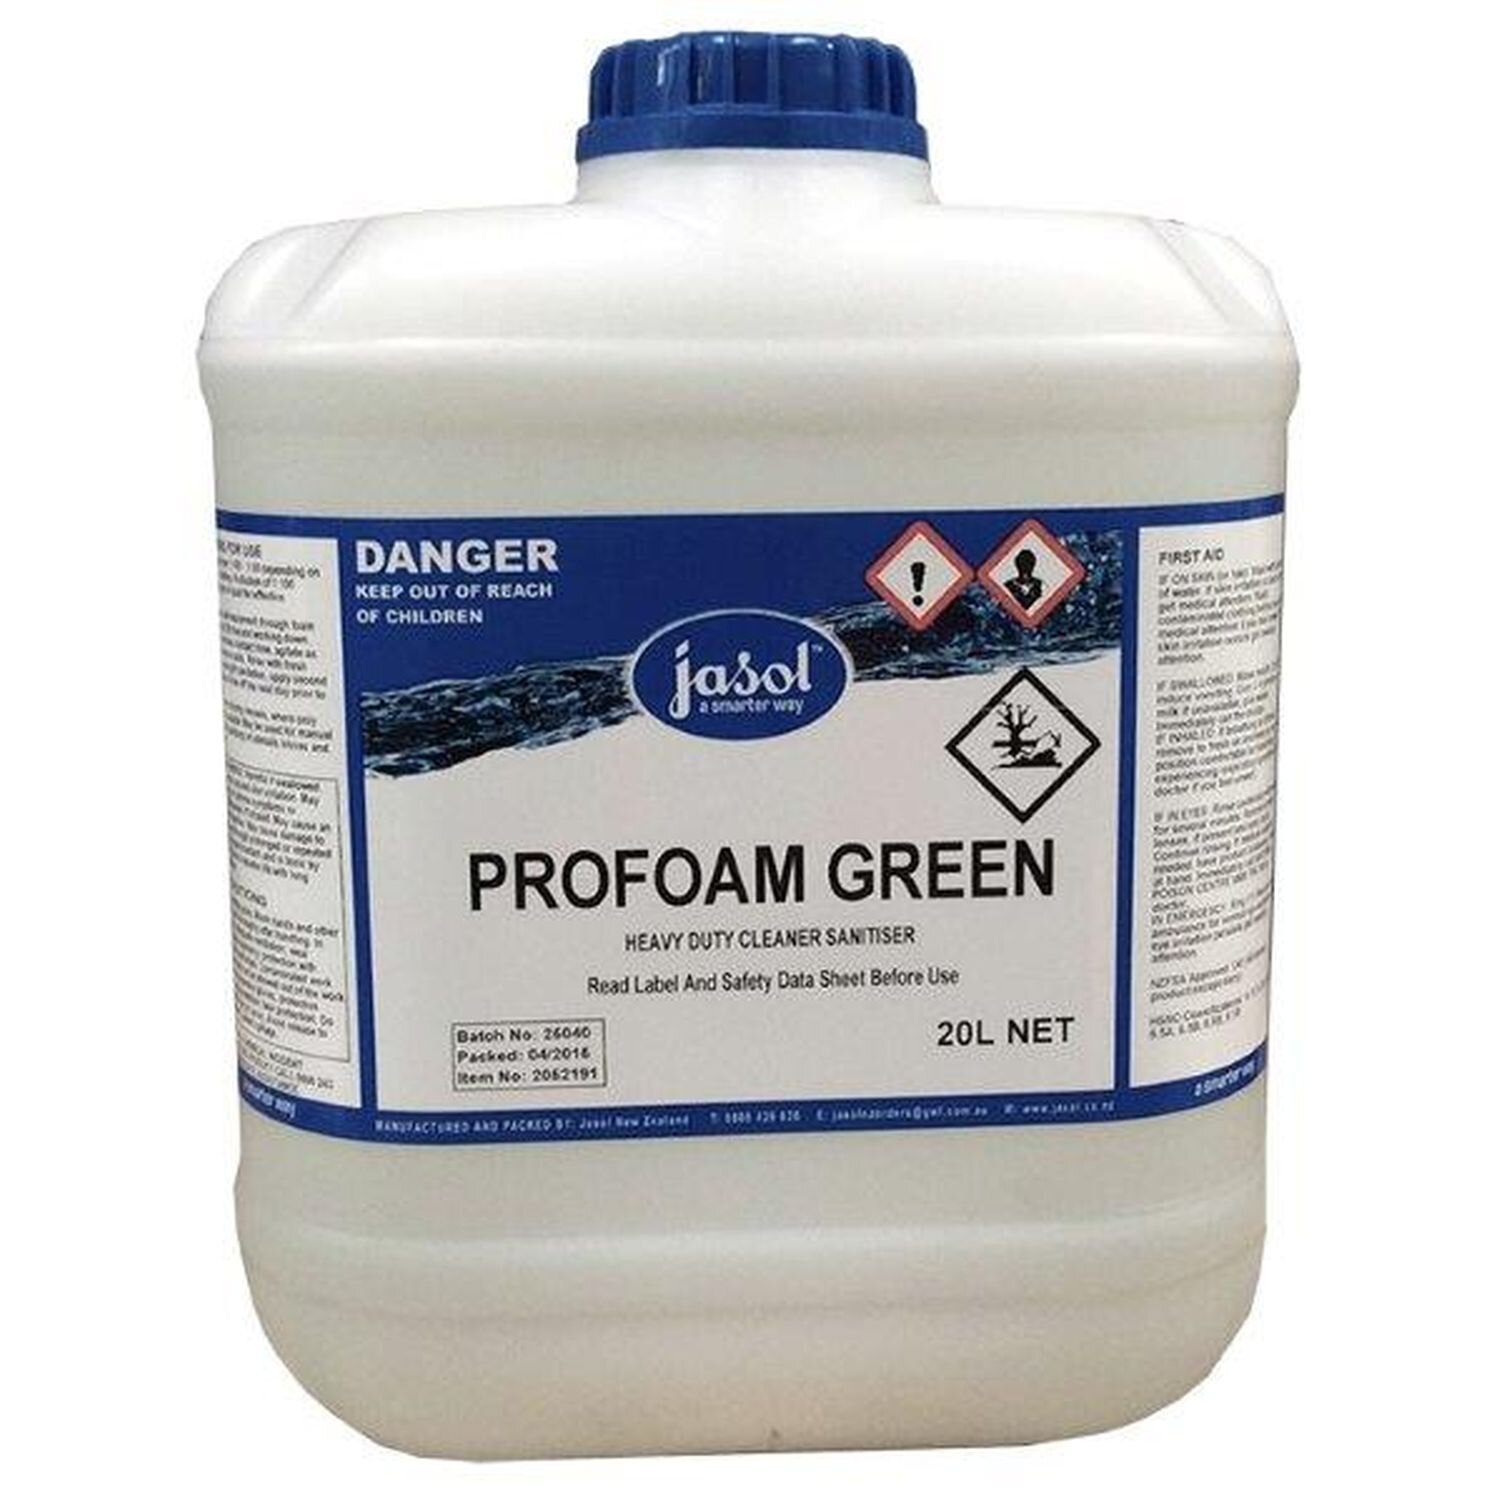 Profoam Green H/Duty Cleaner Sanitiser 20L